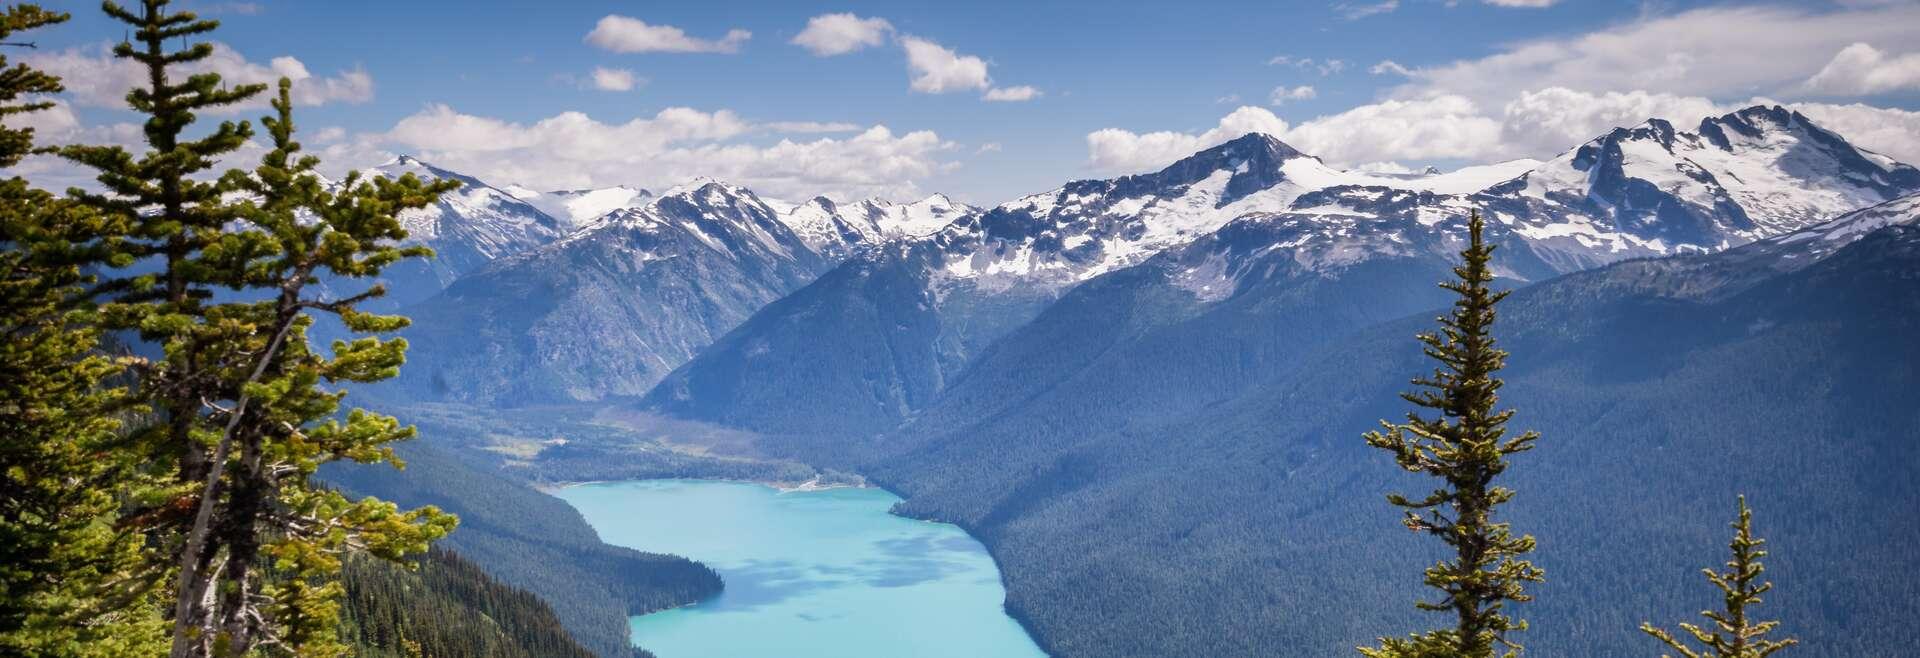 Séjour linguistique Canada, Whistler - Cheakamus lake et riverside